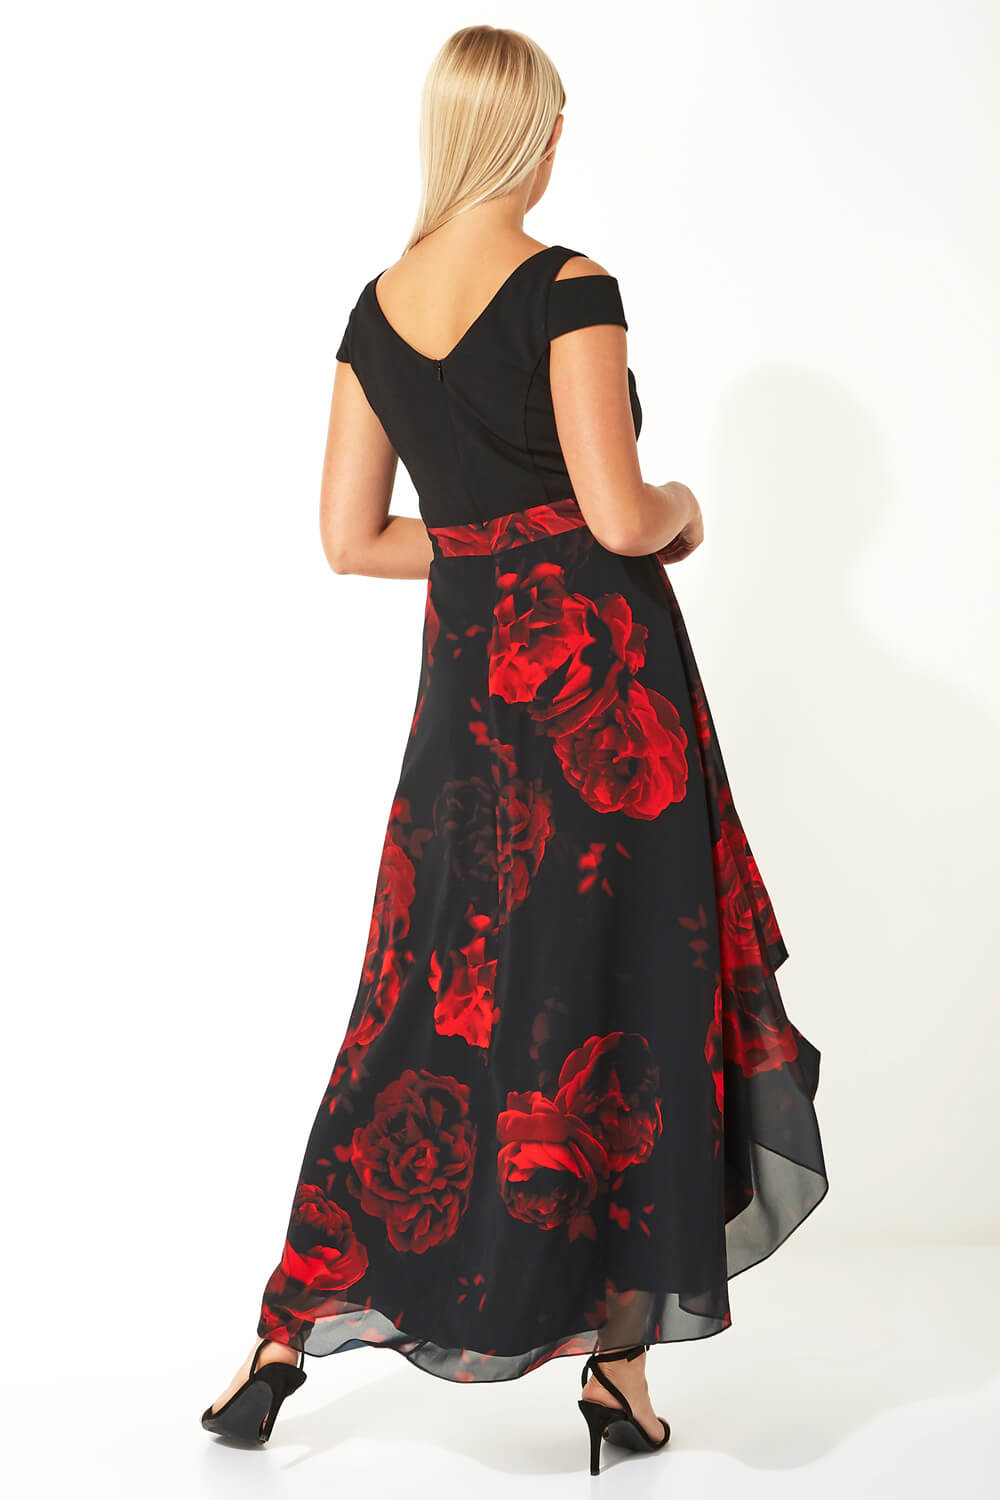 Black Floral Print Cold Shoulder Maxi Dress, Image 2 of 4